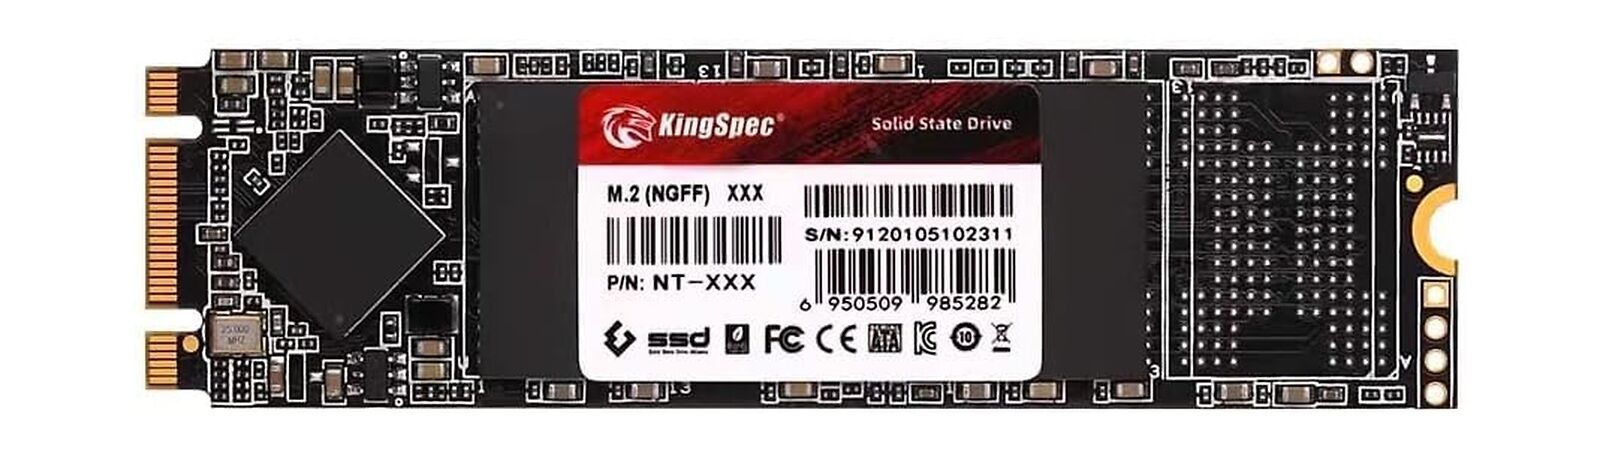 KingSpec M.2 SATA SSD, 2TB 2280 SATA III 6Gbps Internal M.2 SSD, Ultra-Slim N...